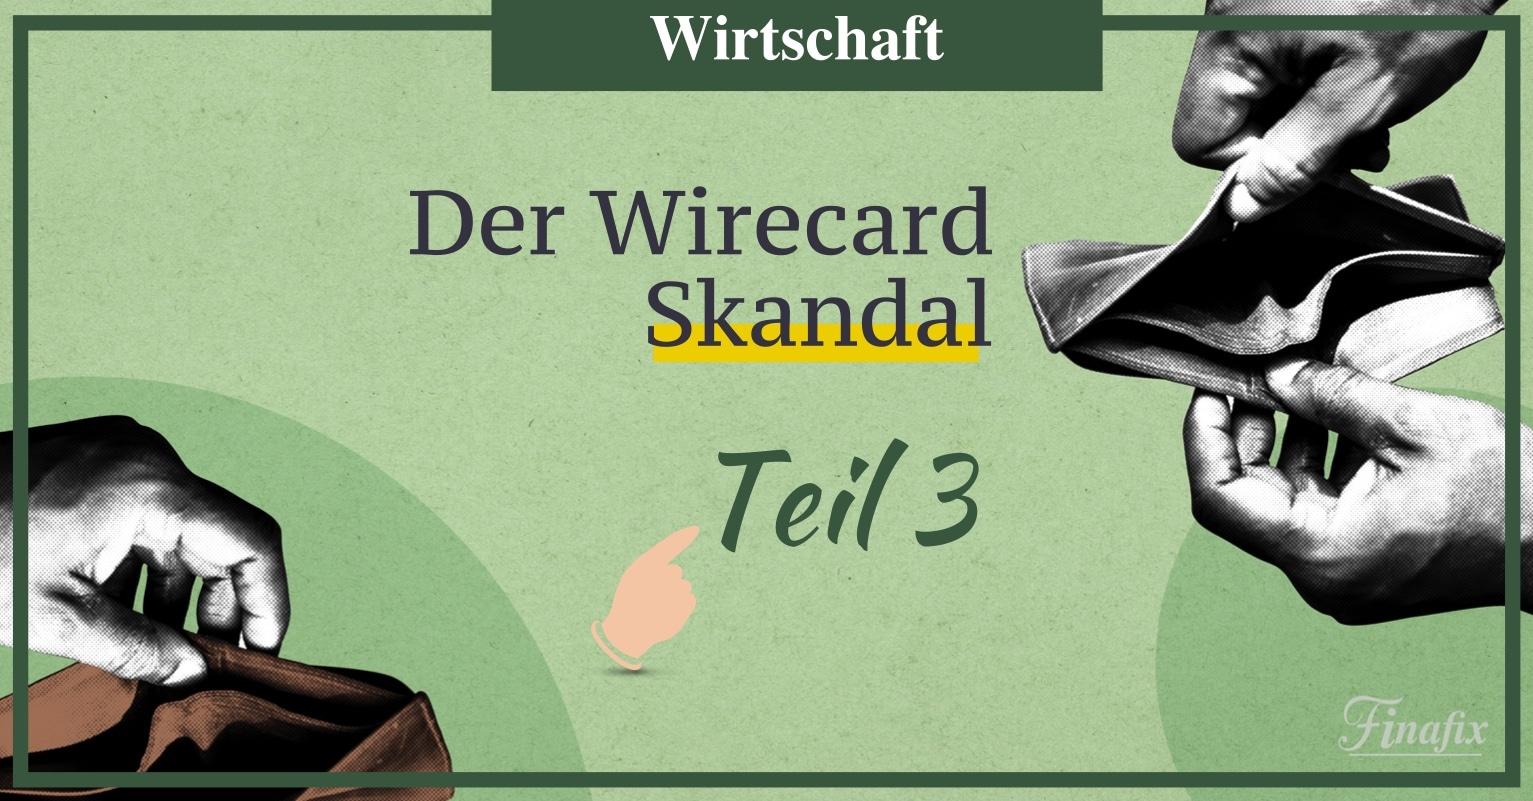 wirecard skandal einfach erklärt